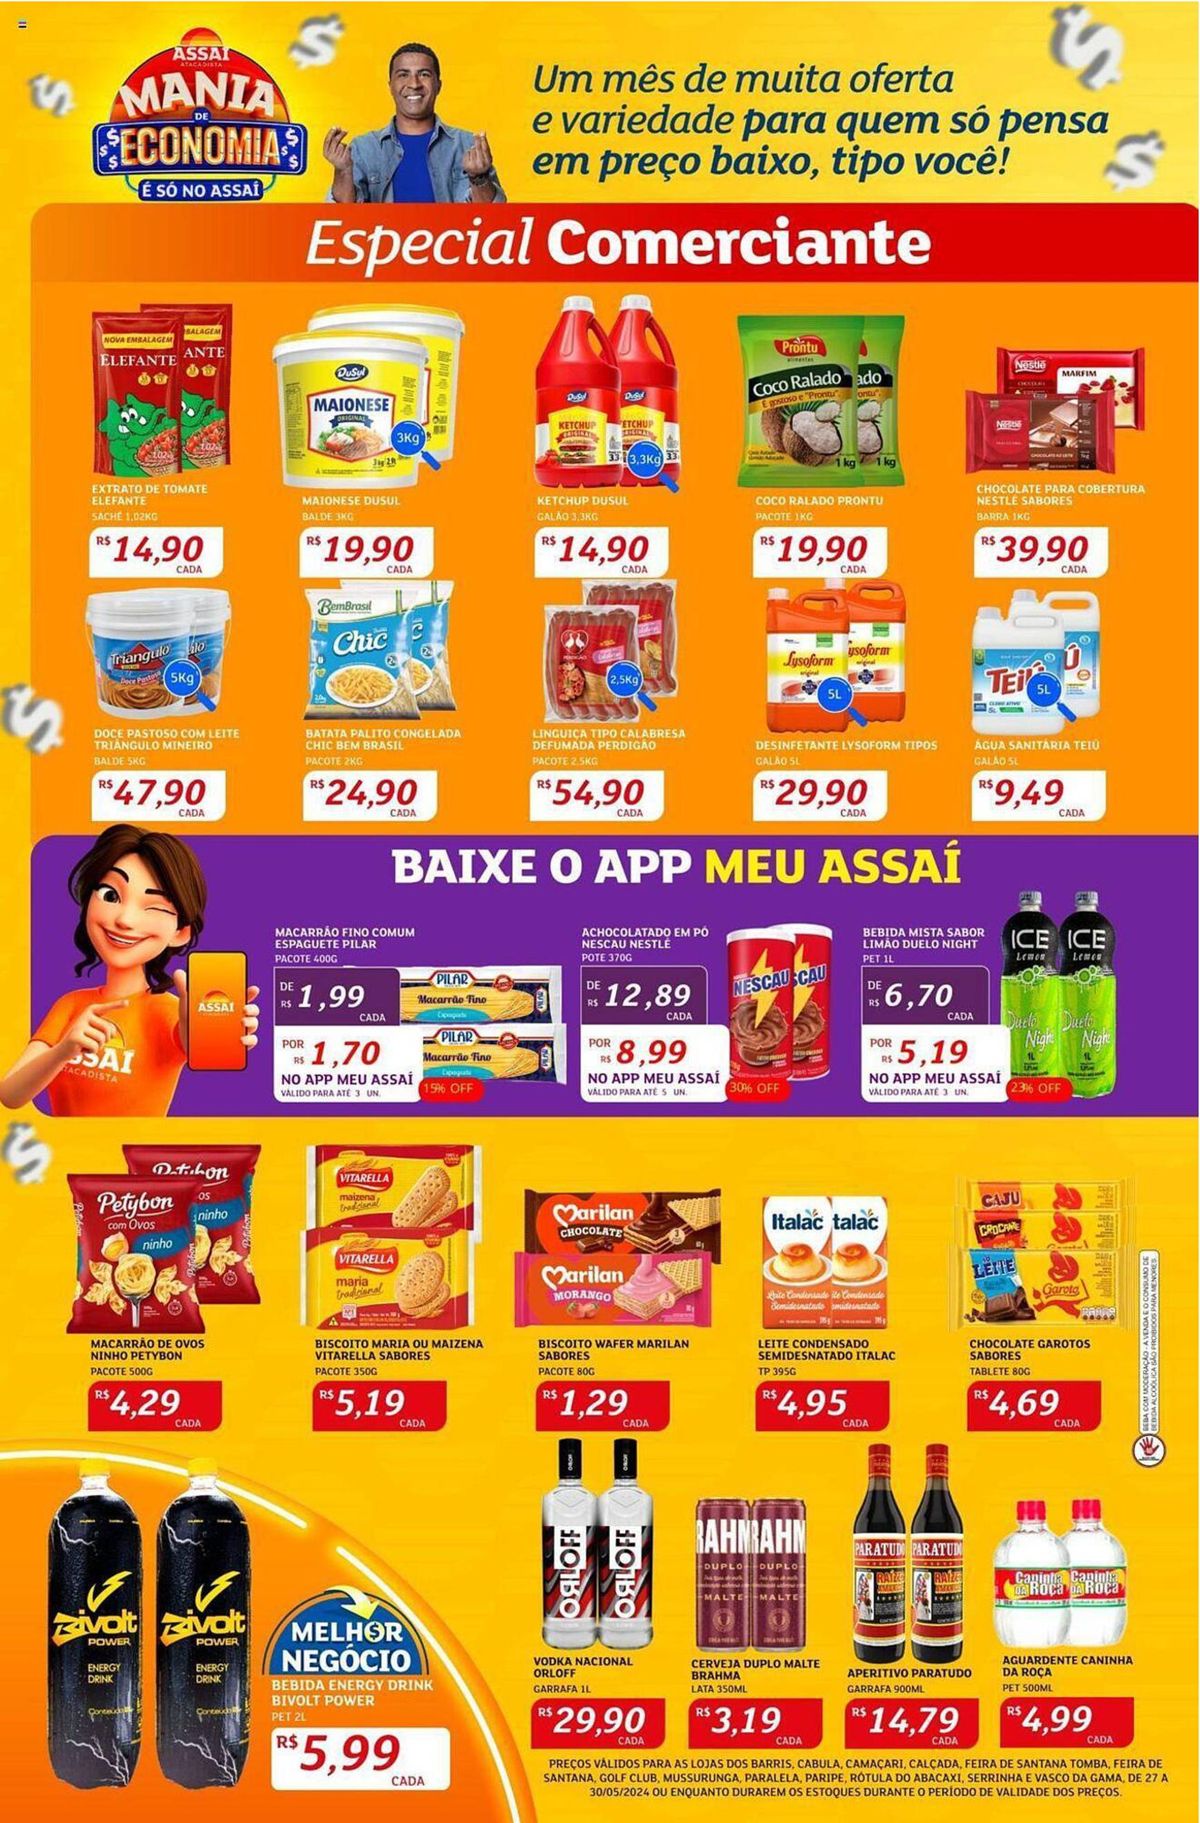 Ofertas de supermercado: produtos em promoção!